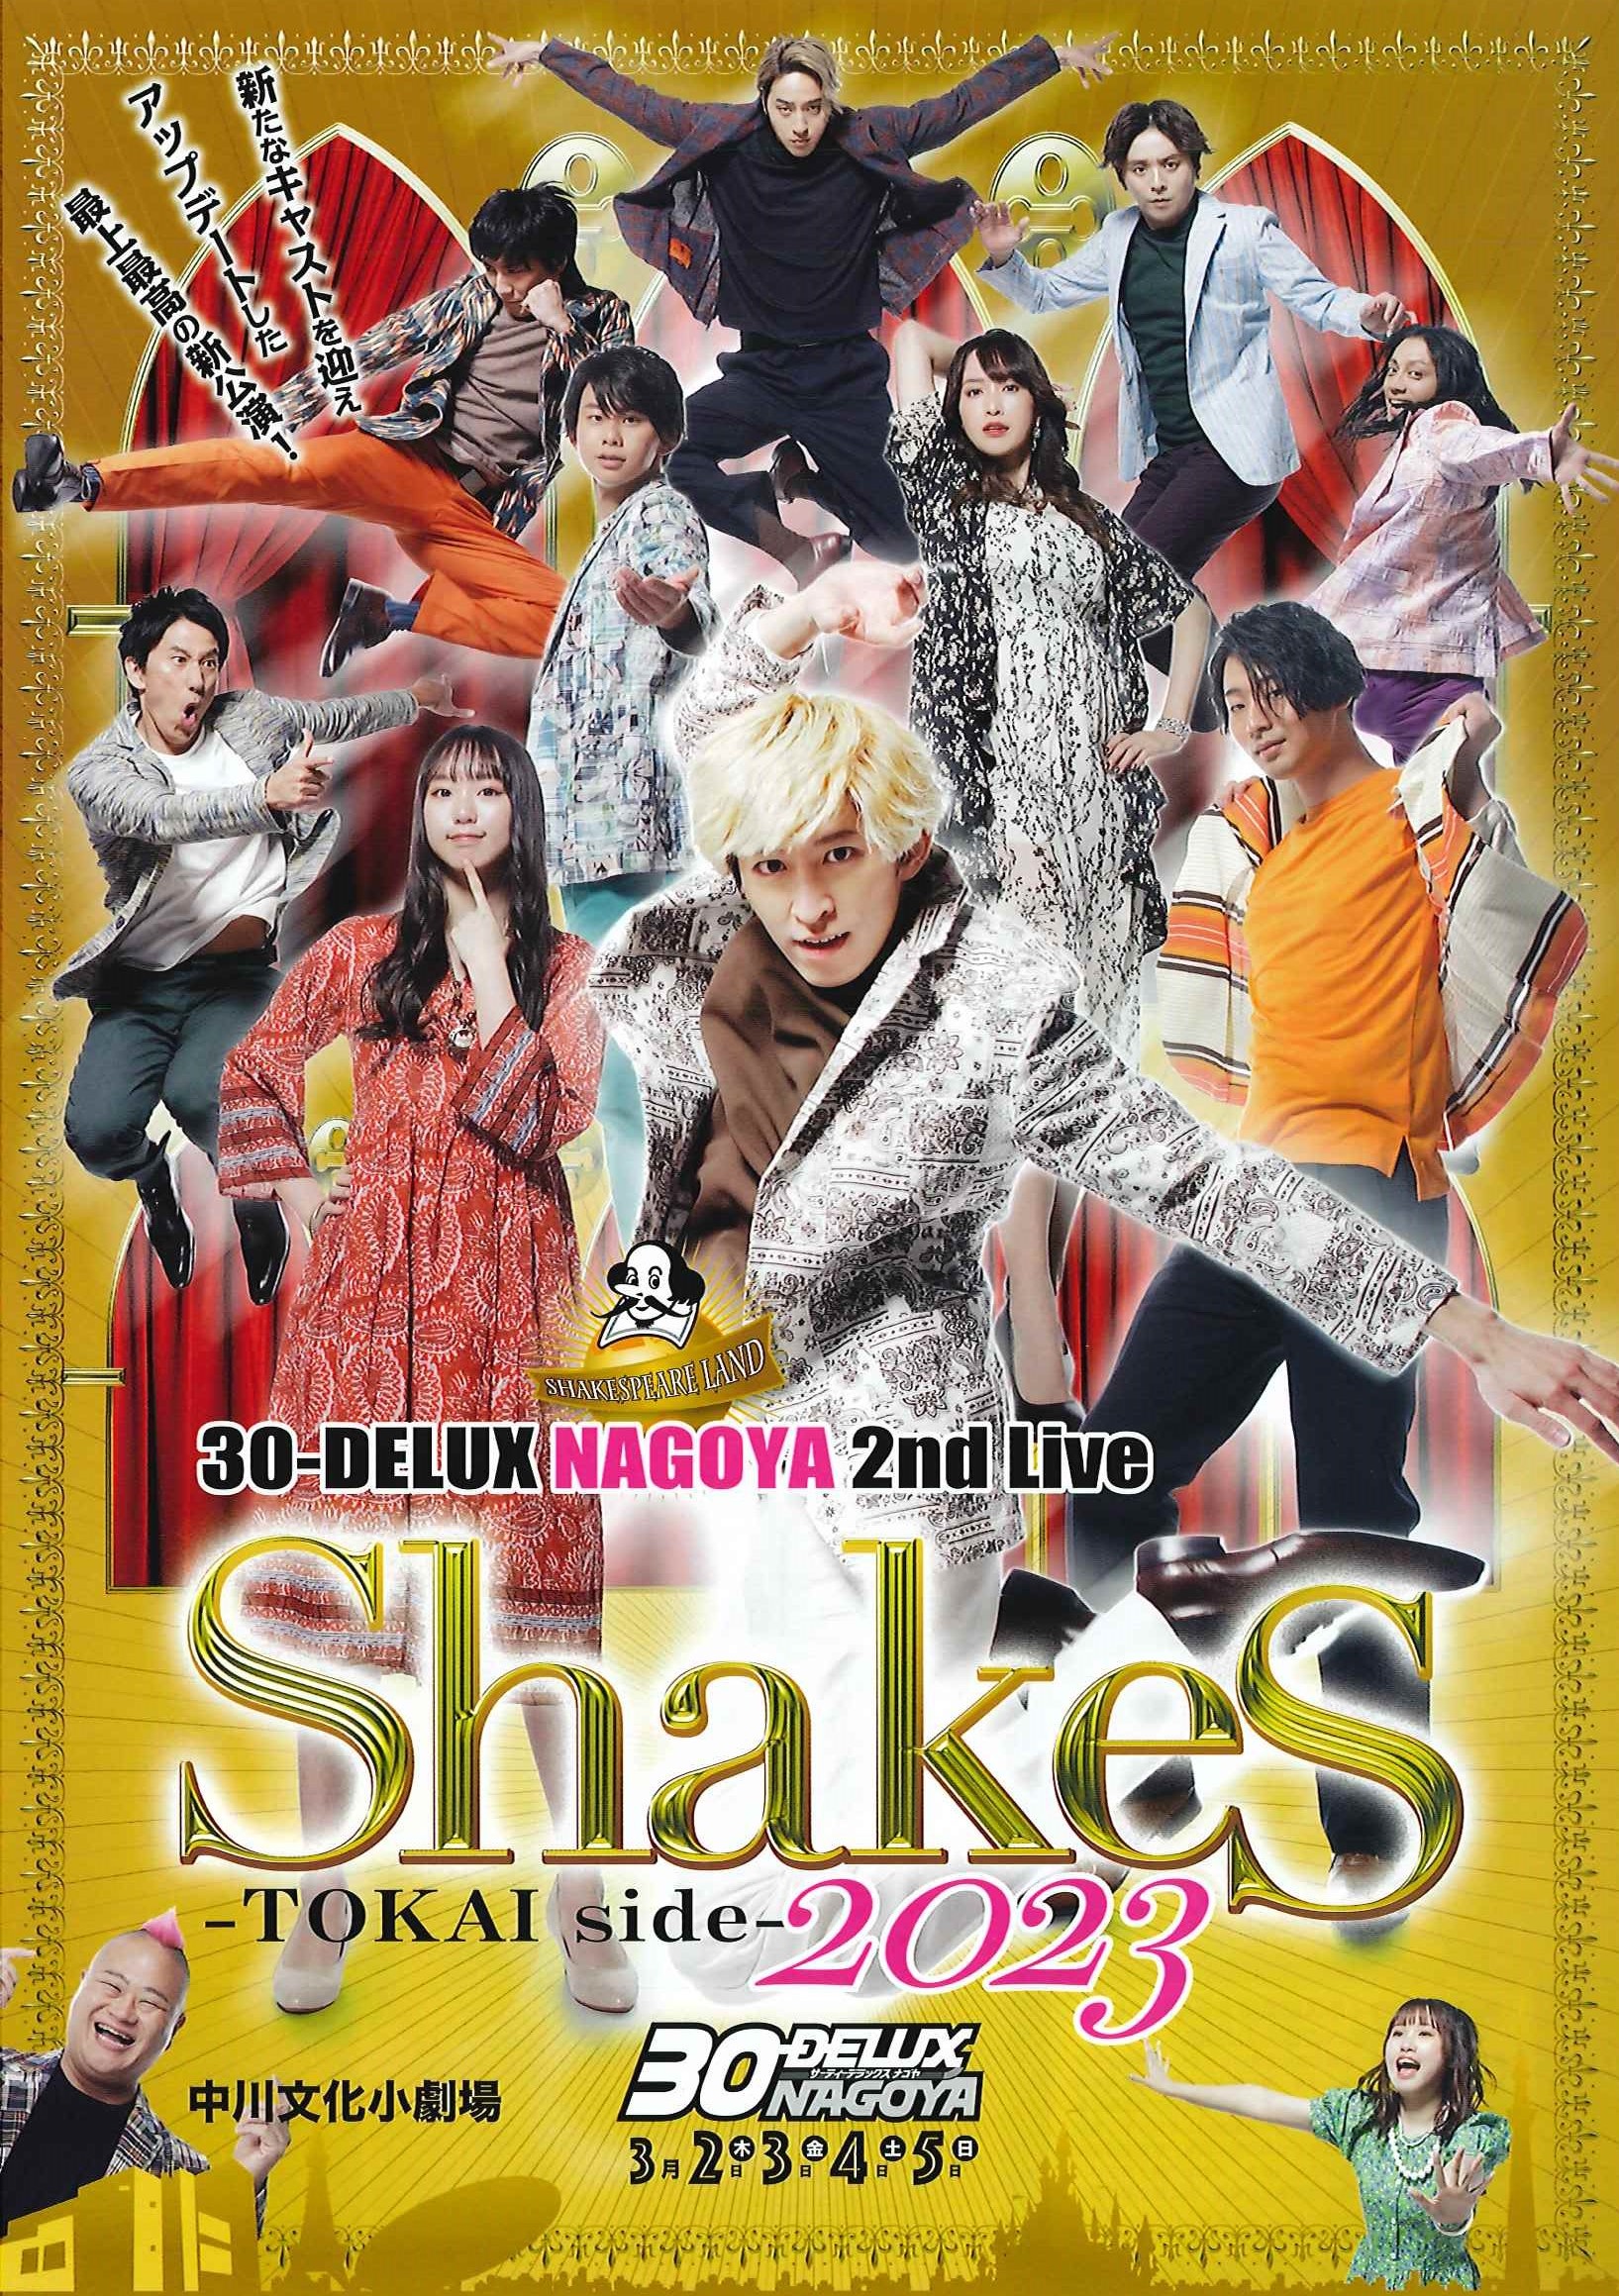 演劇公演「30-DELUX NAGOYA 2nd Live SHAKES-TOKAI side 2023」のチラシ